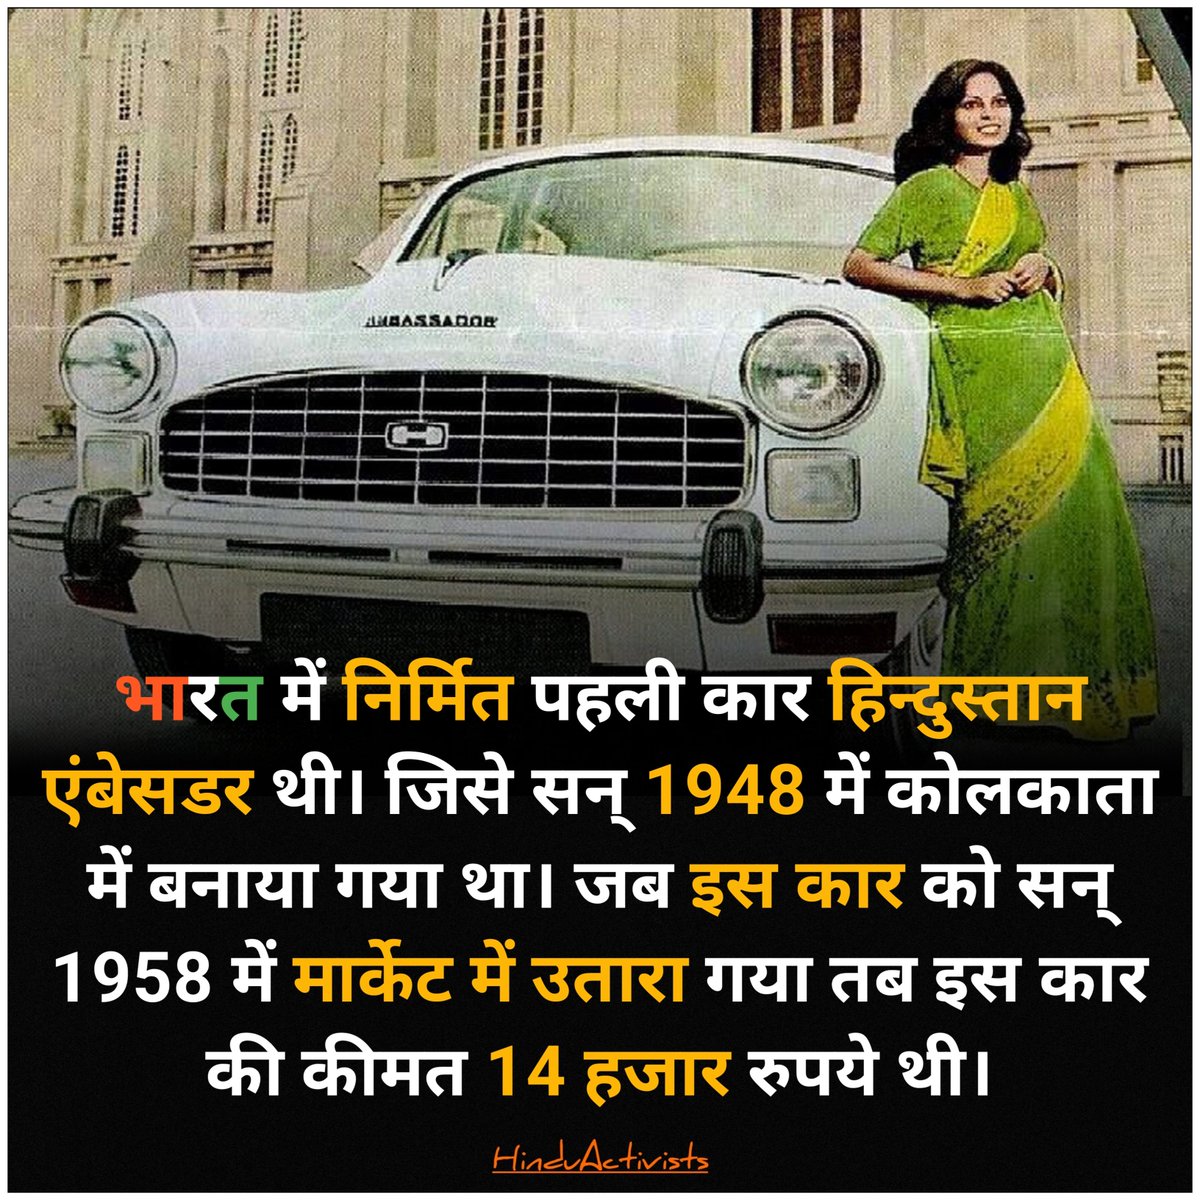 भारत में निर्मित पहली कार हिन्दुस्तान एंबेसडर थी। जिसे सन् 1948 में कोलकाता में बनाया गया था। जब इस कार को सन् 1958 में मार्केट में उतारा गया तब इस कार की कीमत 14 हजार रुपये थी।
#Car #Ambassador #hmambassador #hindustanambassador #indiancars #cars  #kolkata #hindustan #bharat